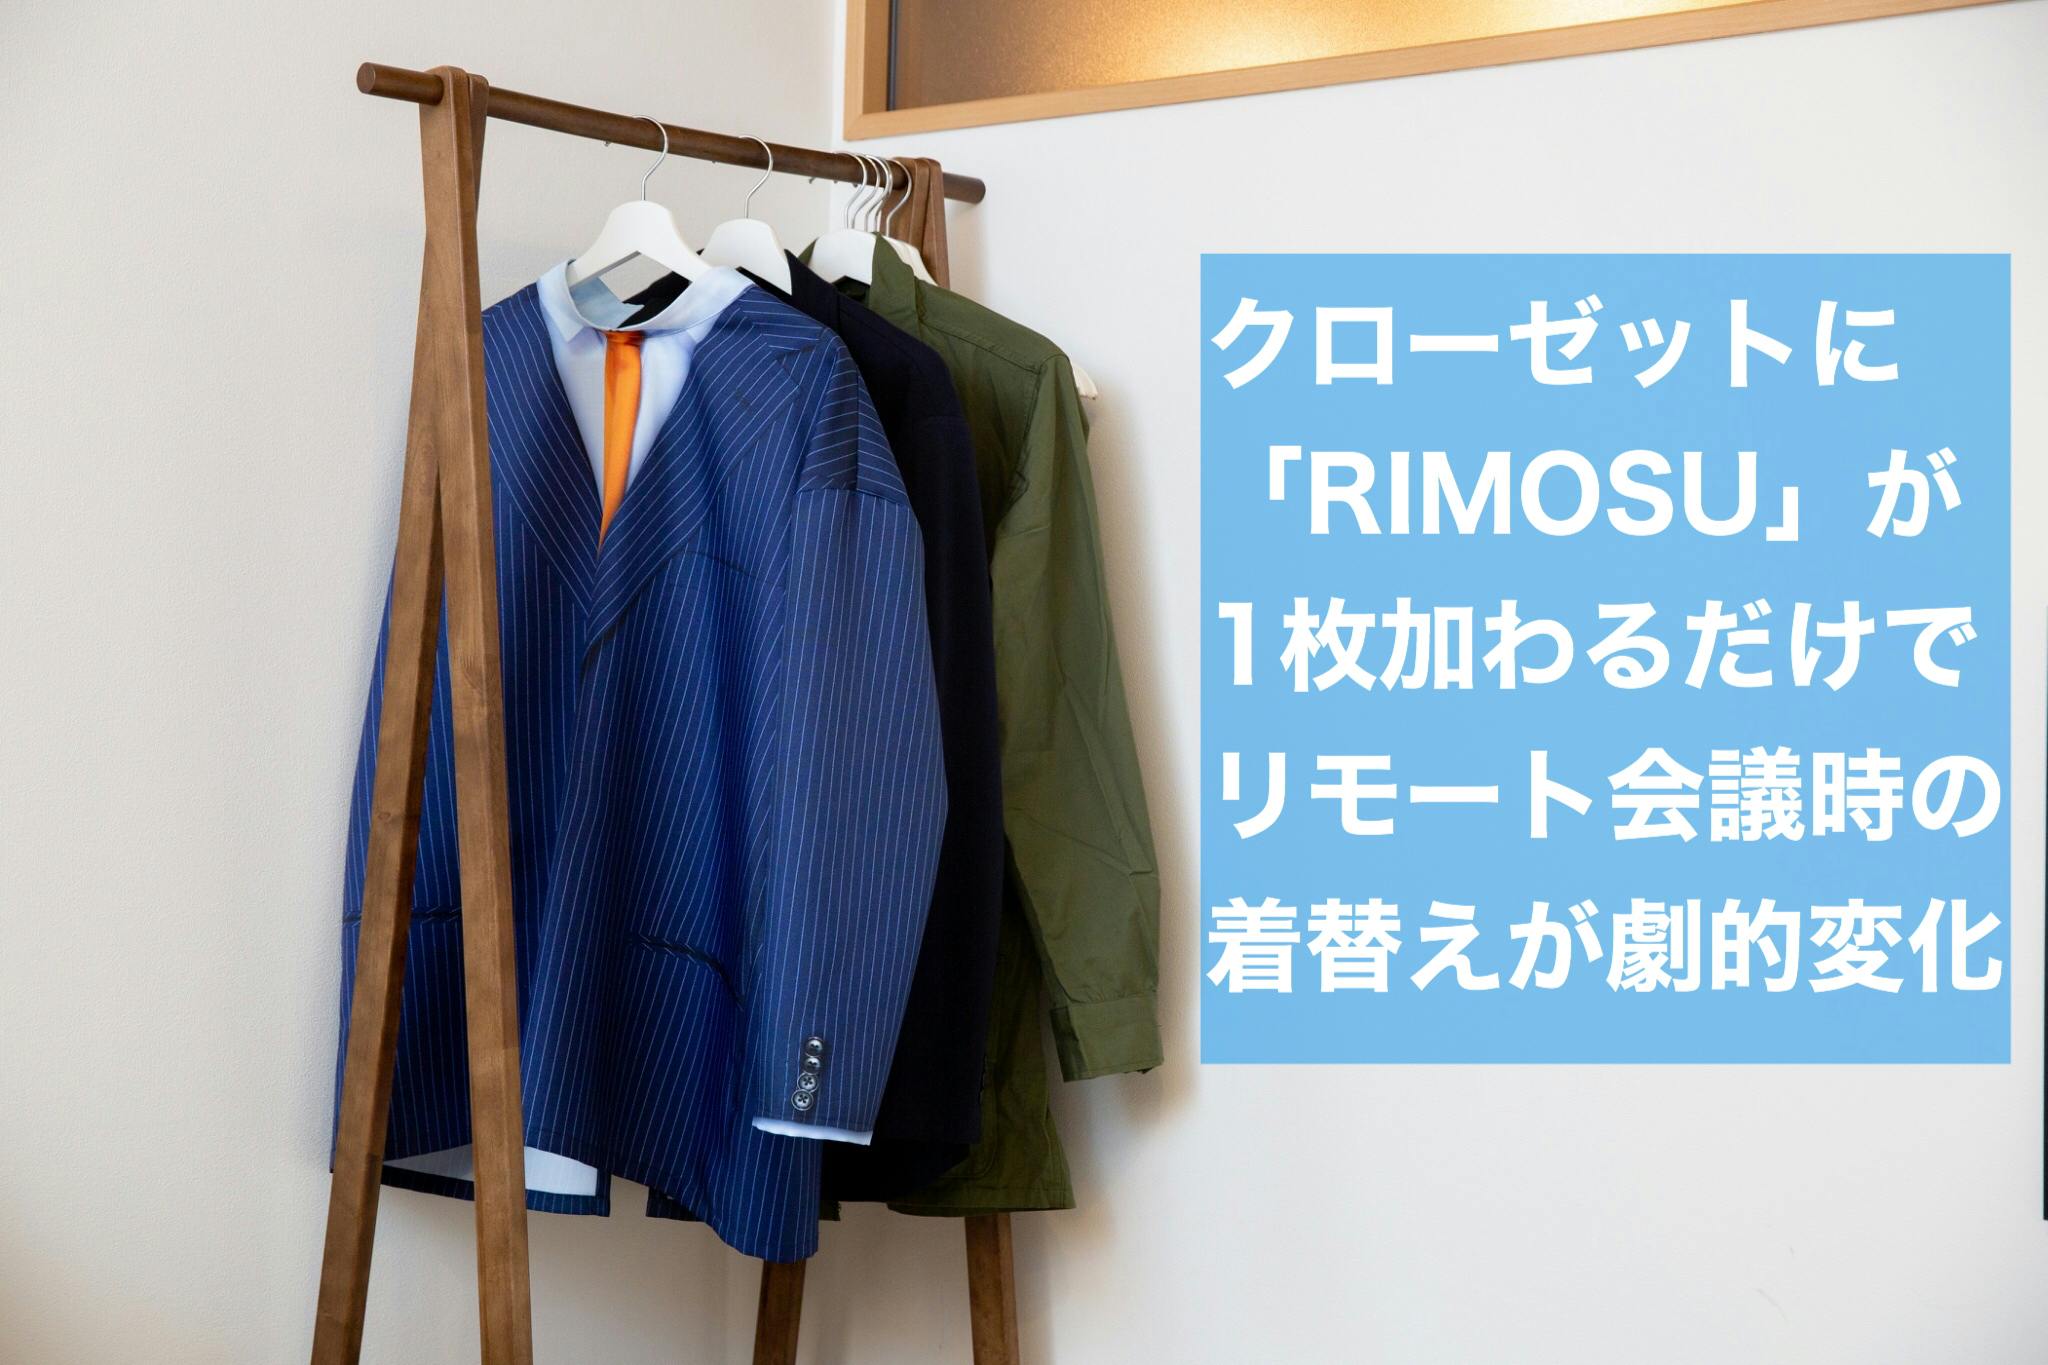 3秒で着れる【リモート会議専用】スーツ『RIMOSU』を広めたい！！